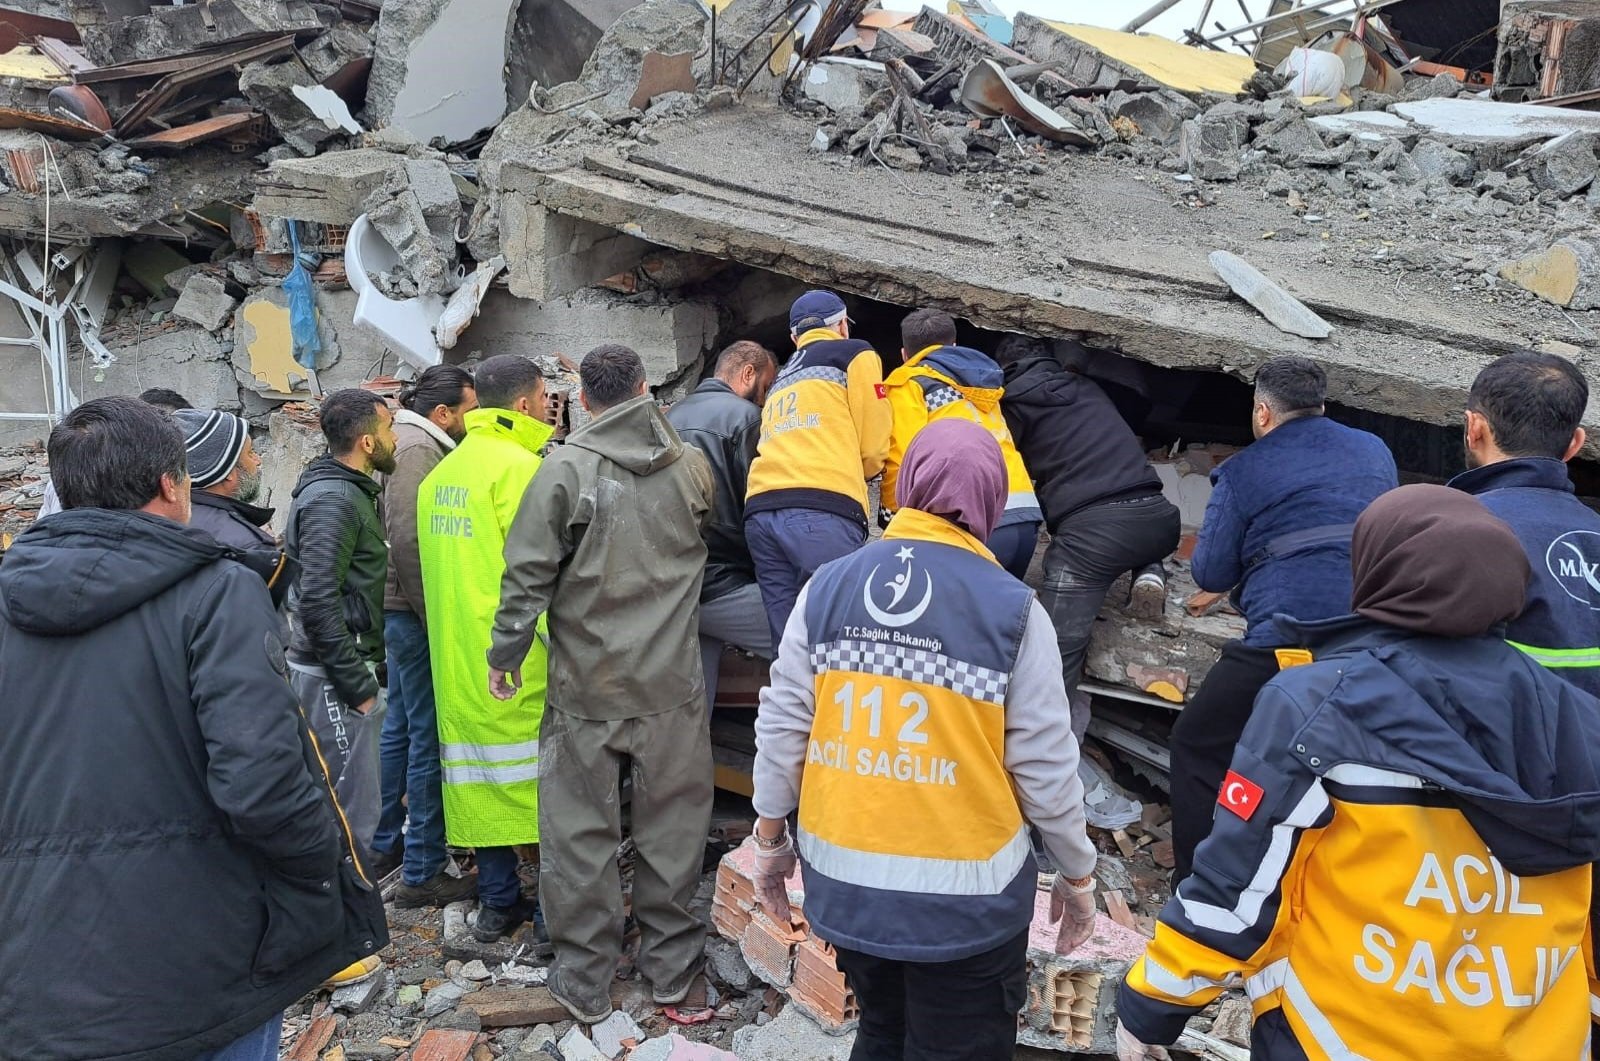 Kahramanmaraş, Hatay, Gaziantep menangguhkan penerbangan setelah gempa 7,7